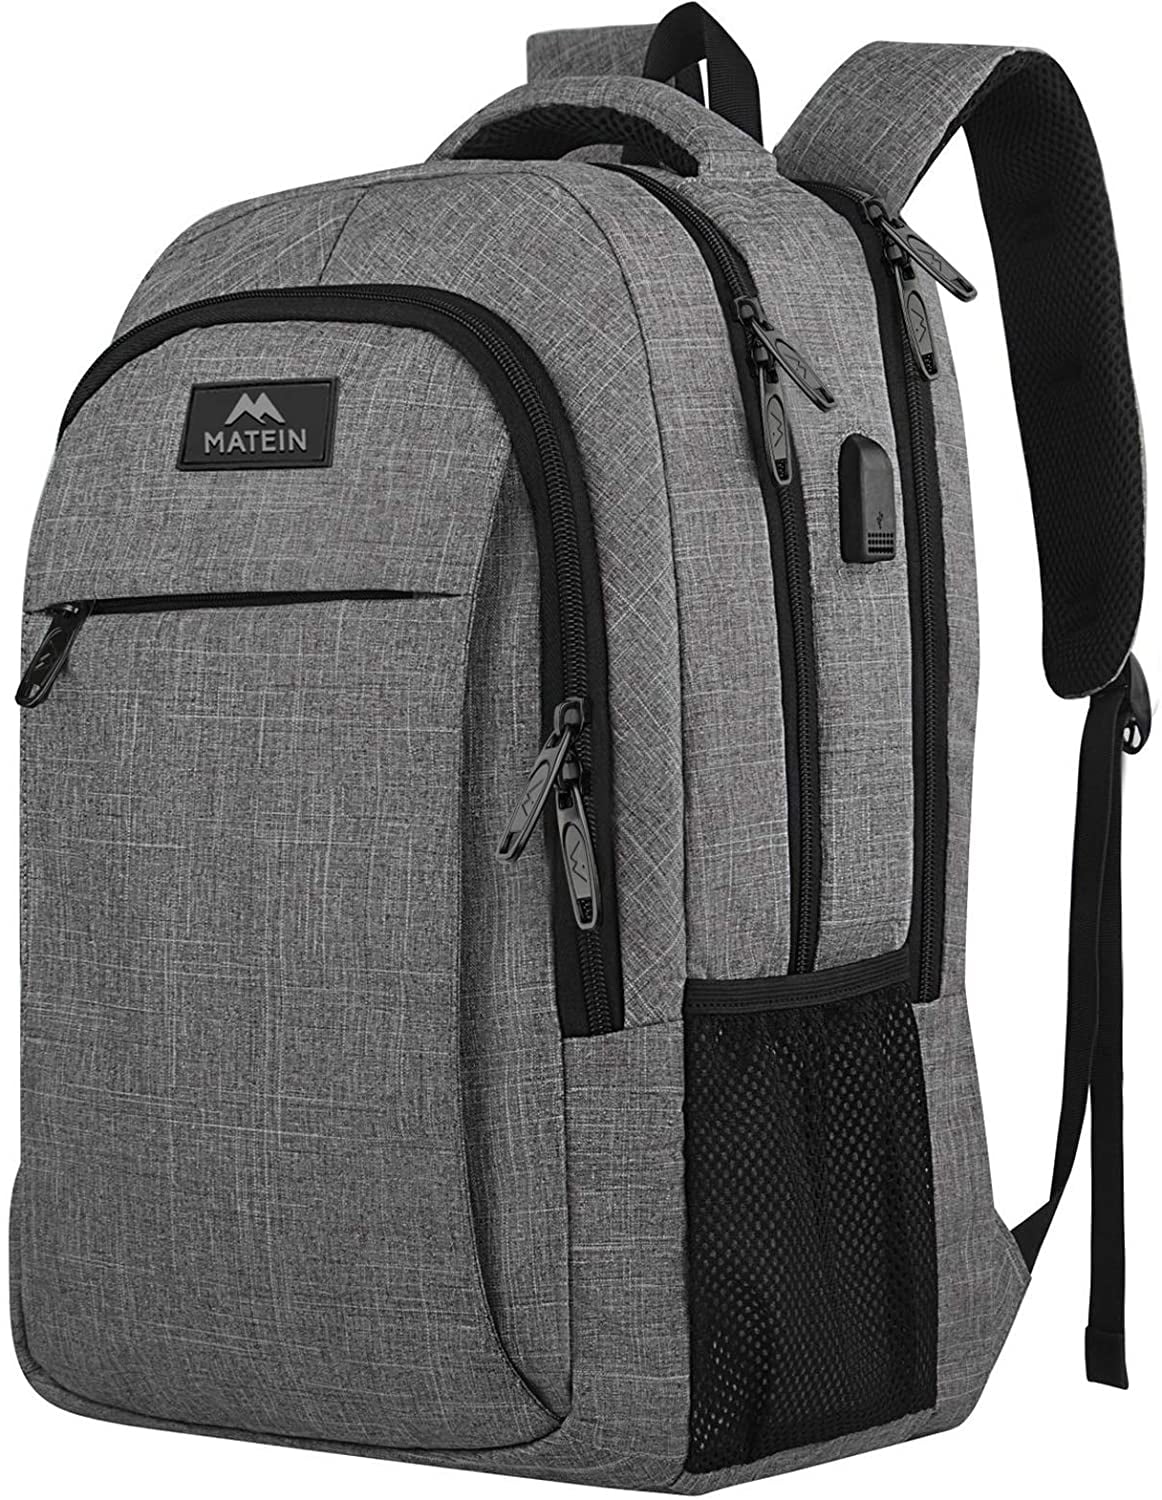 Lightweight 15 inch Laptop Bag Business Messenger Briefcases Sushi Waterproof Computer Tablet Shoulder Bag Carrying Case Handbag for Men and Women 